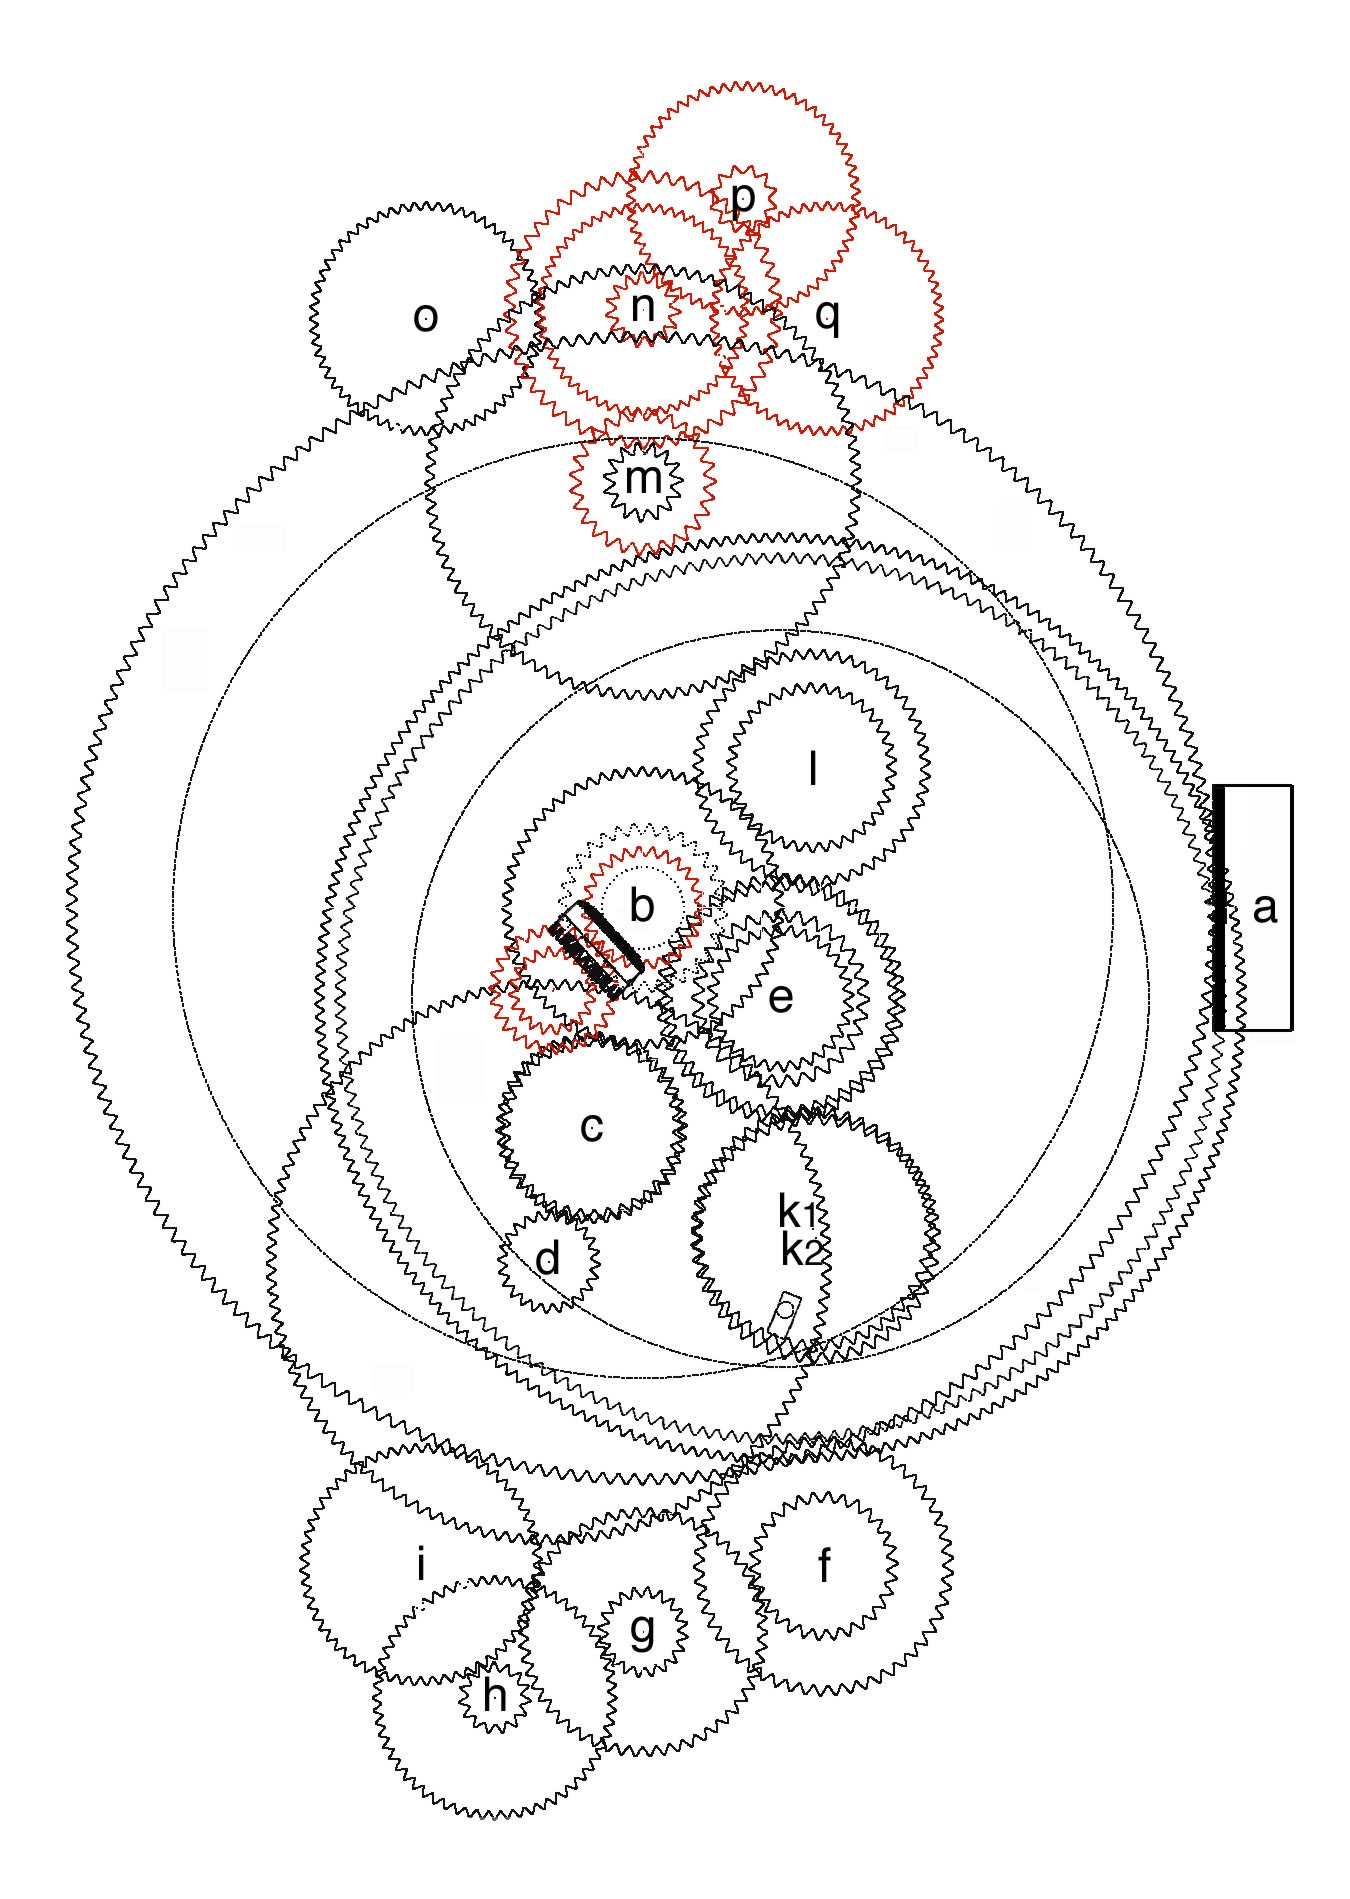 Esquema general del mecanismo de Anticitera en vista superior. © 2008 Tony Freeth, Images First Ltd. (Clic para ampliar)